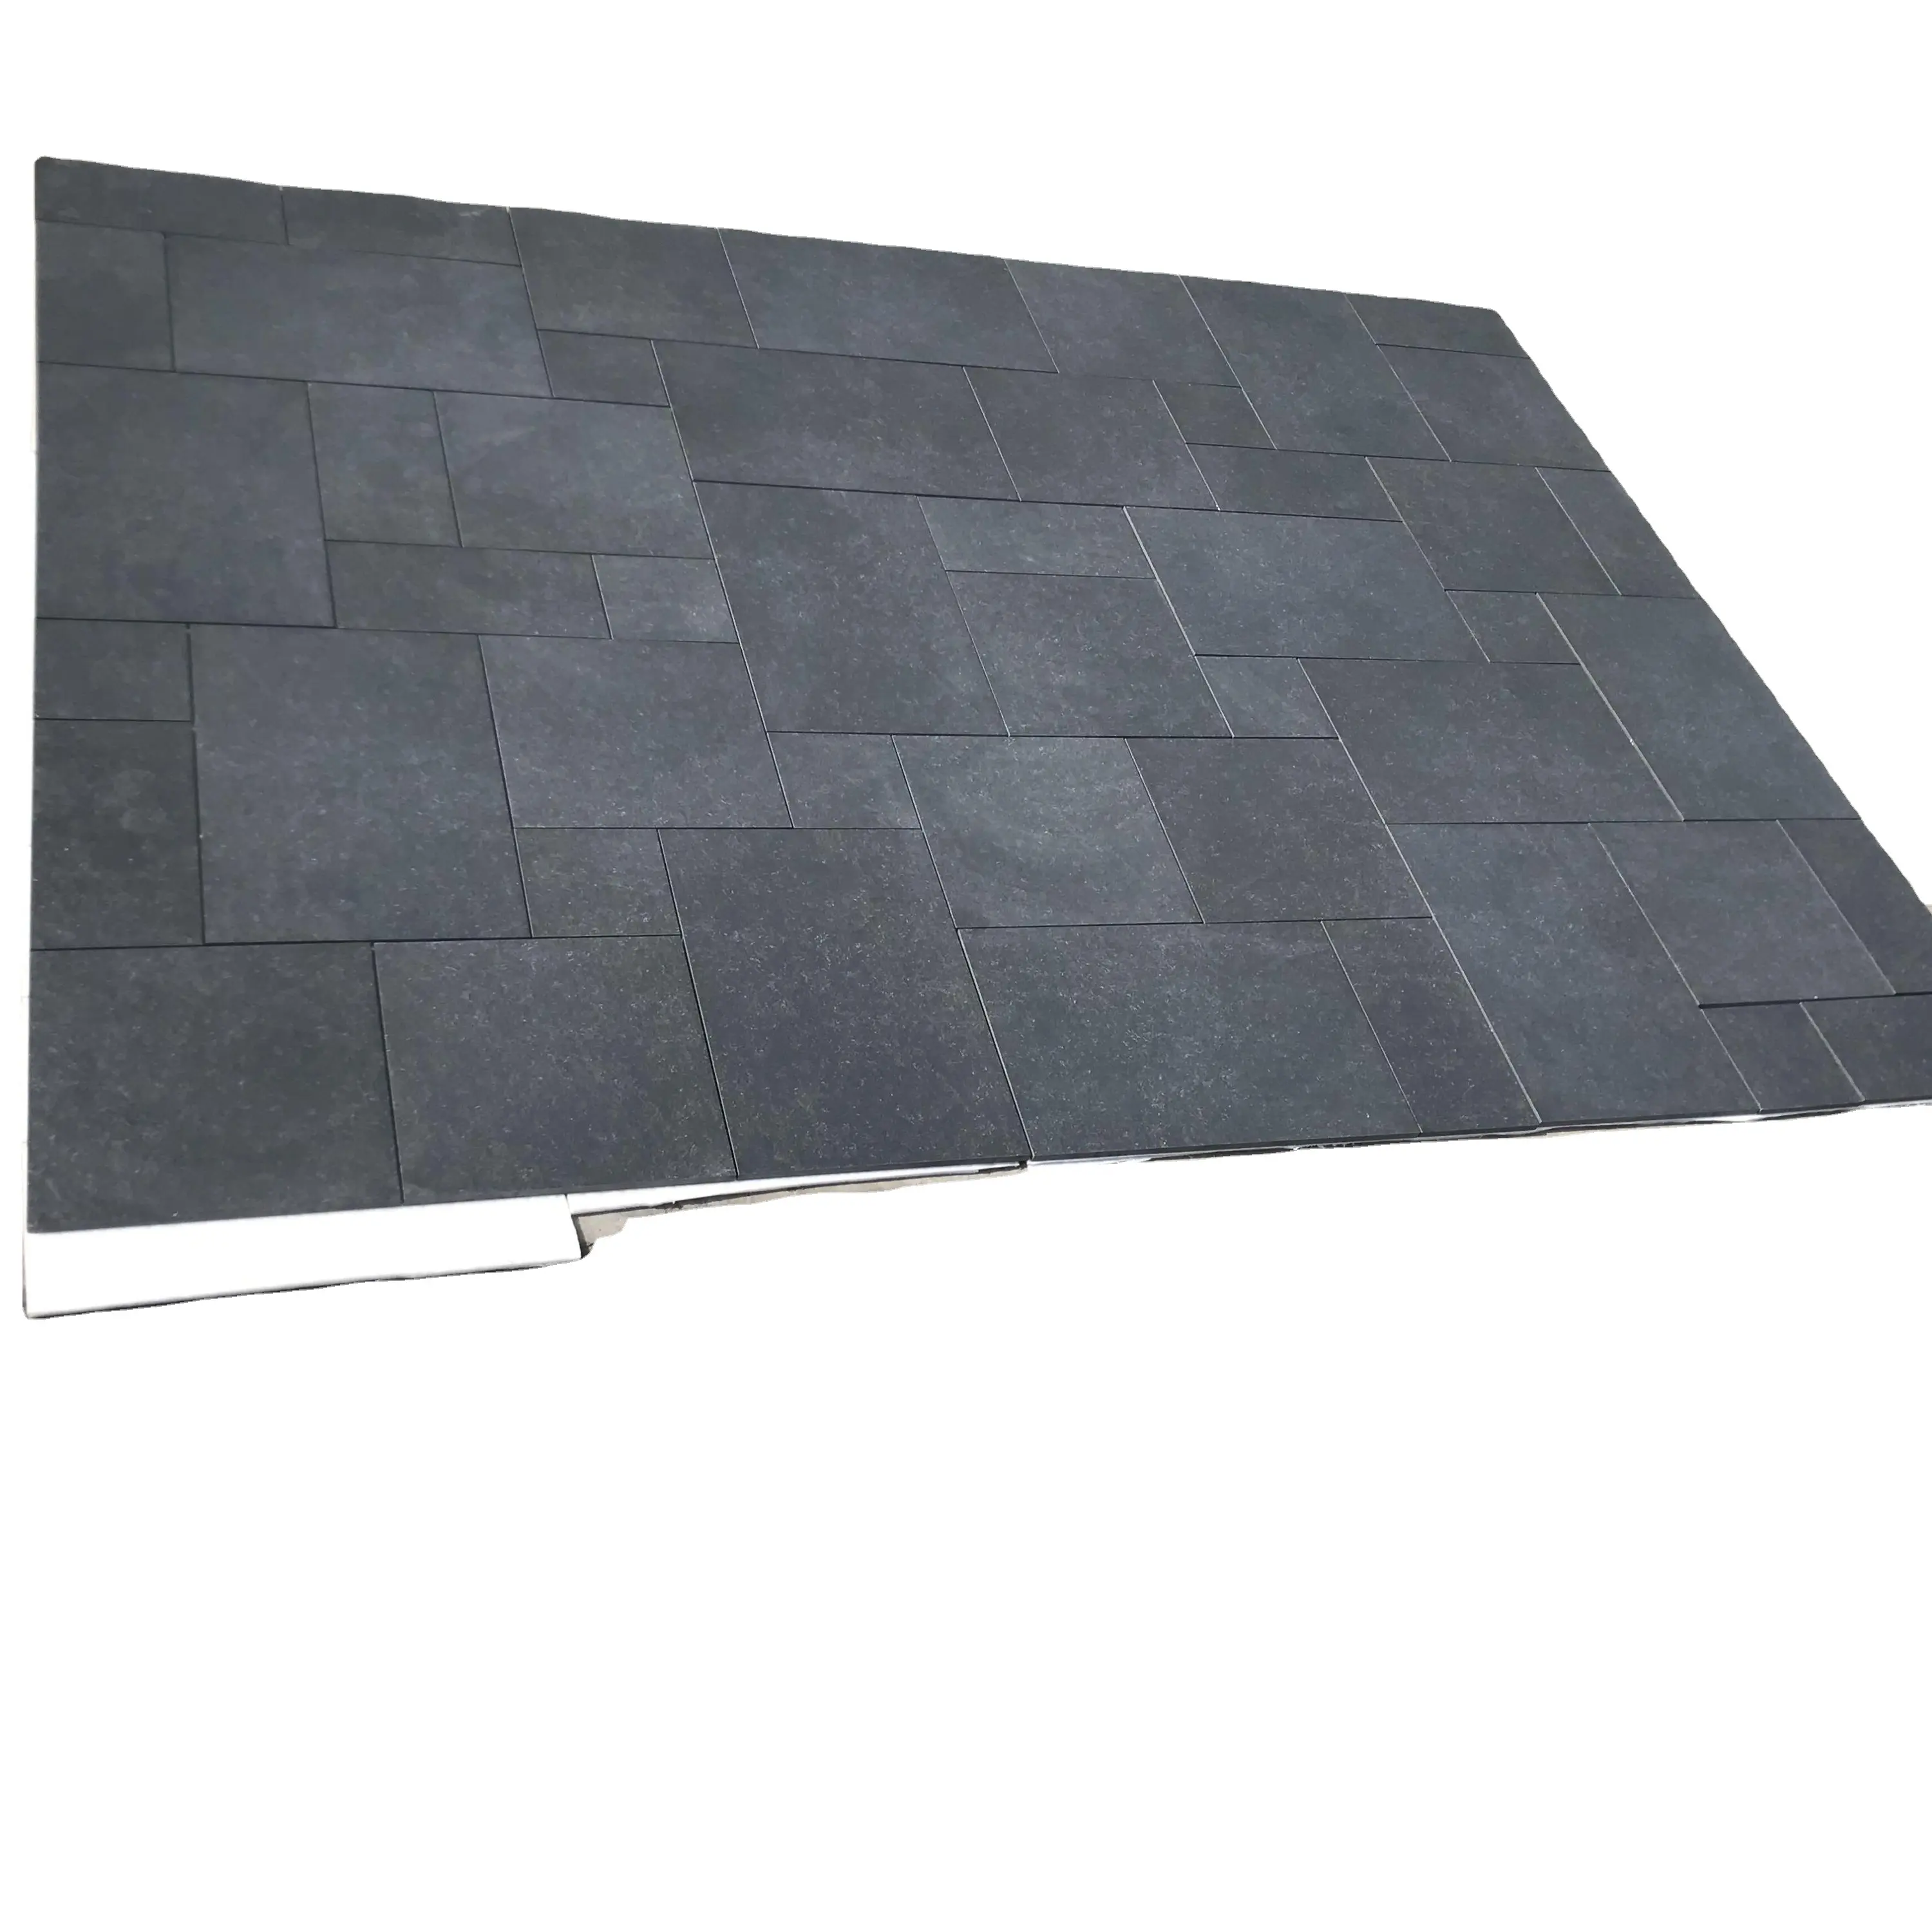 R11 Surface Blue Stone Natural Concrete 3d Porcelain Floor Tiles and Terrazzo Slate Compound Digital Matt Outdoor Parking Tiles